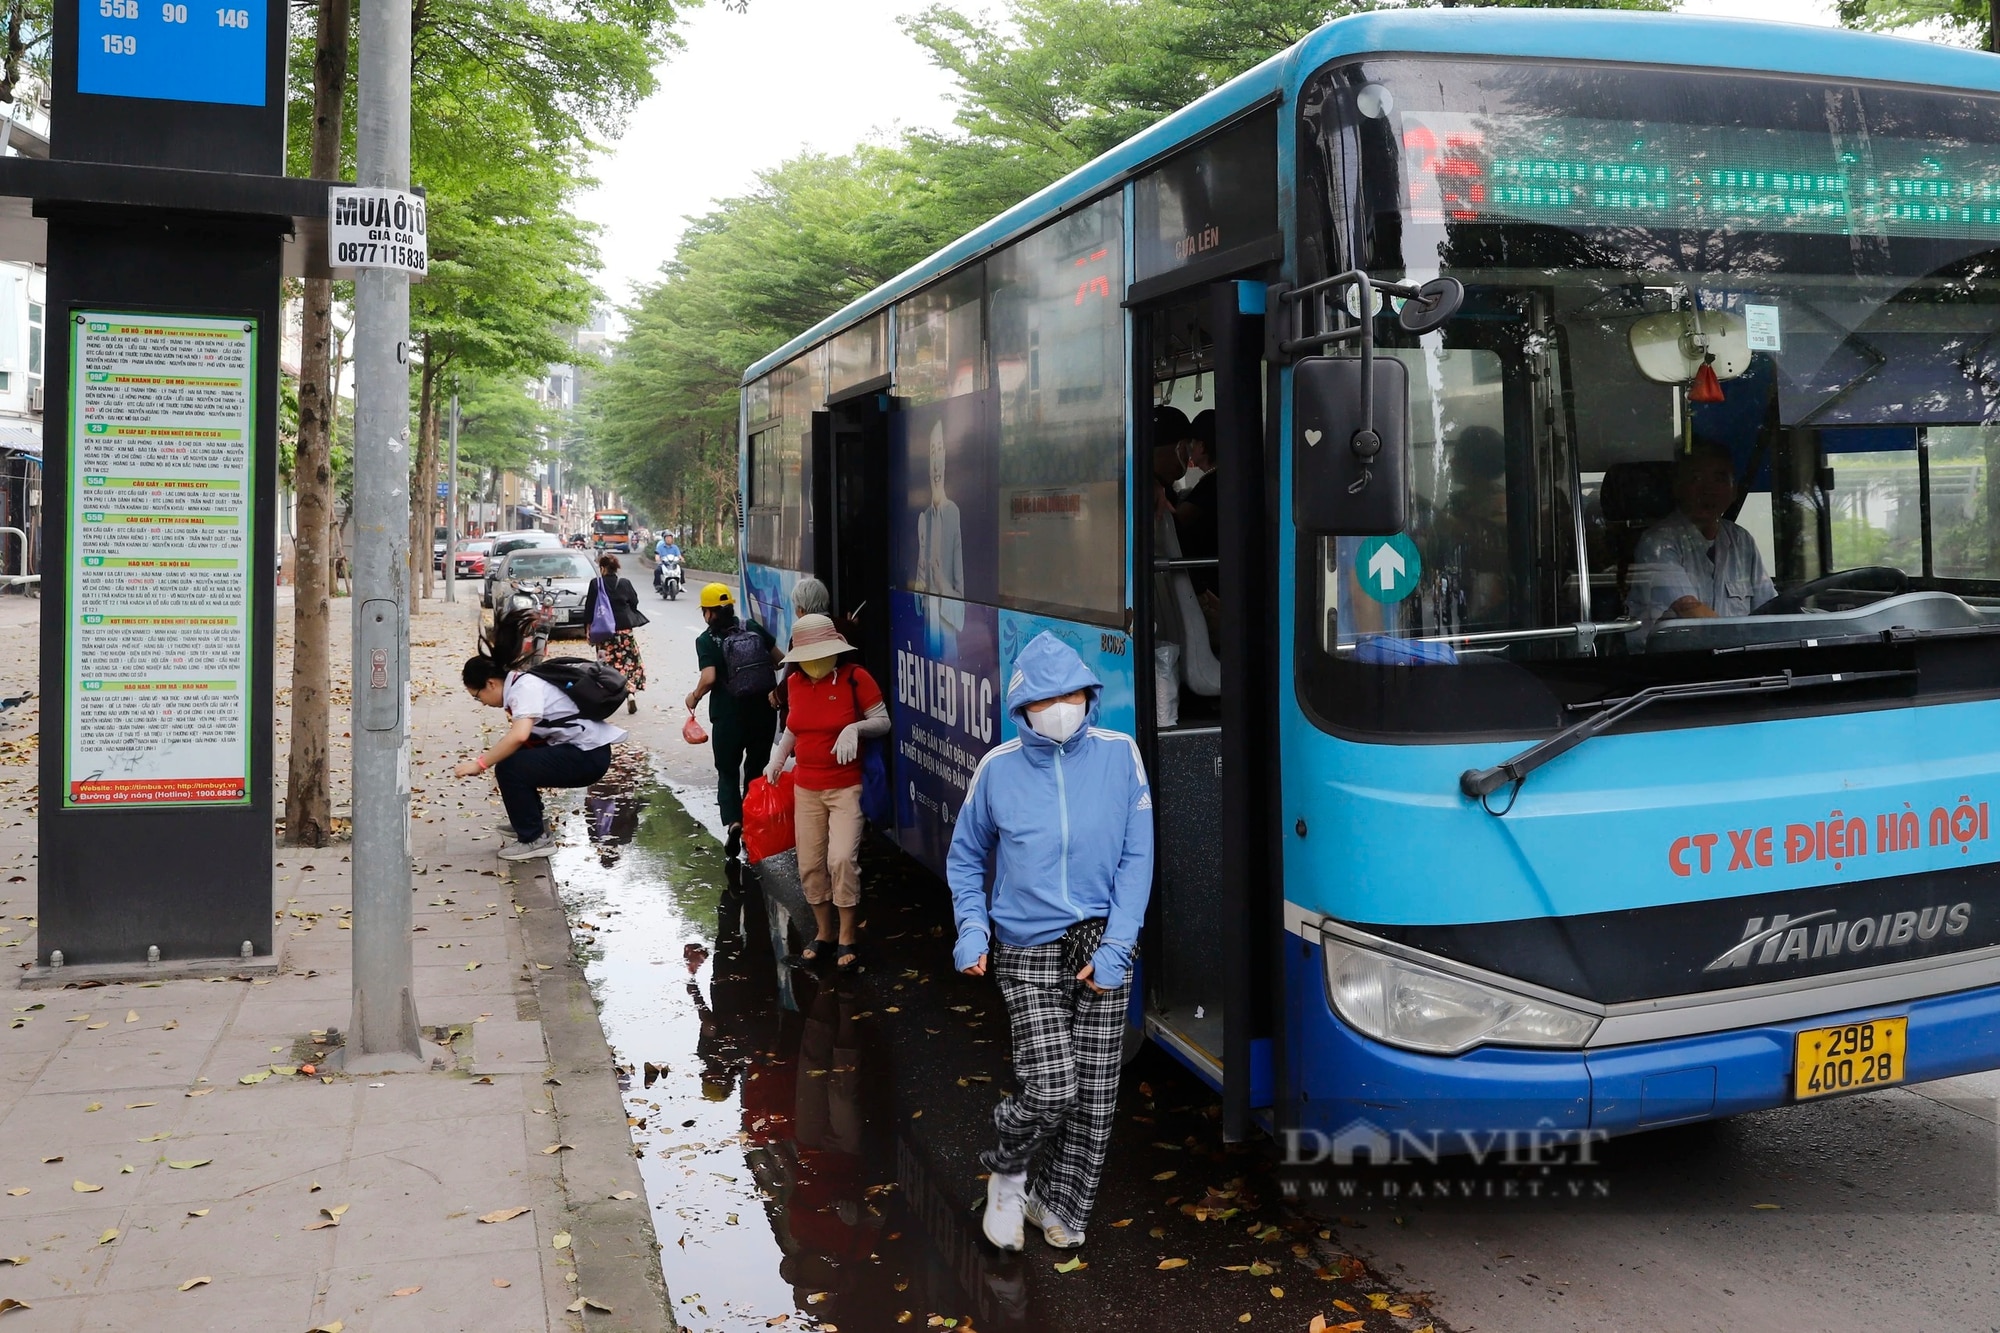 Bi hài cảnh người dân lên xuống tại điểm chờ xe buýt đạt chuẩn Châu Âu ở Hà Nội- Ảnh 5.